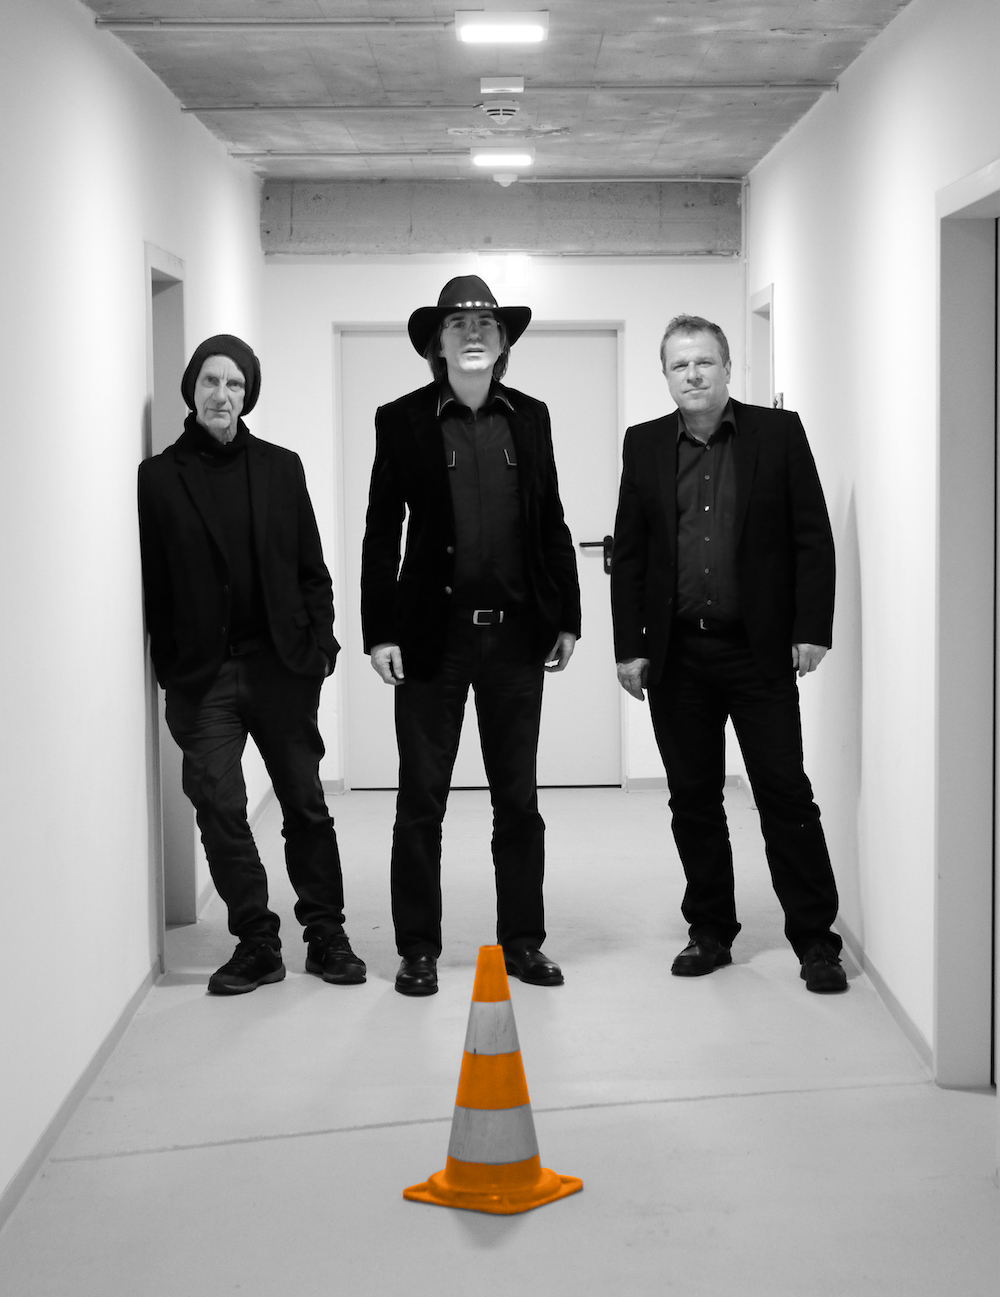 Drei Männer in schwarzer Kleidung stehen in einem weißen Flur, der strahlend hell erleuchtet ist. Der Mann in der Mitte trägt einen Cowboyhut.